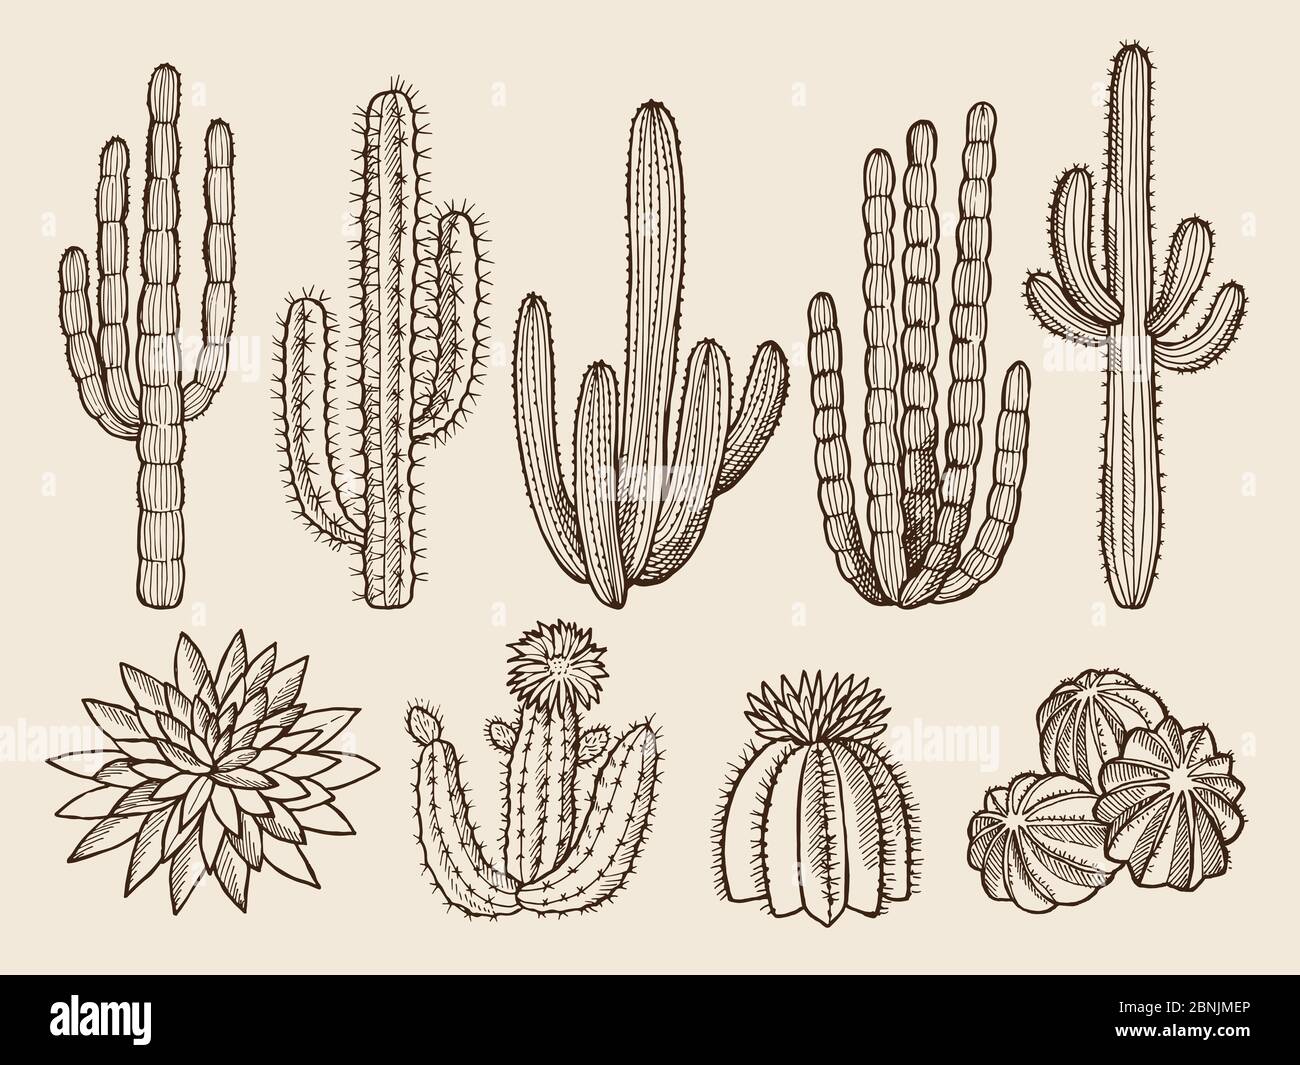 Croquis des illustrations dessinées à la main de cactus et de diverses plantes sauvages Illustration de Vecteur